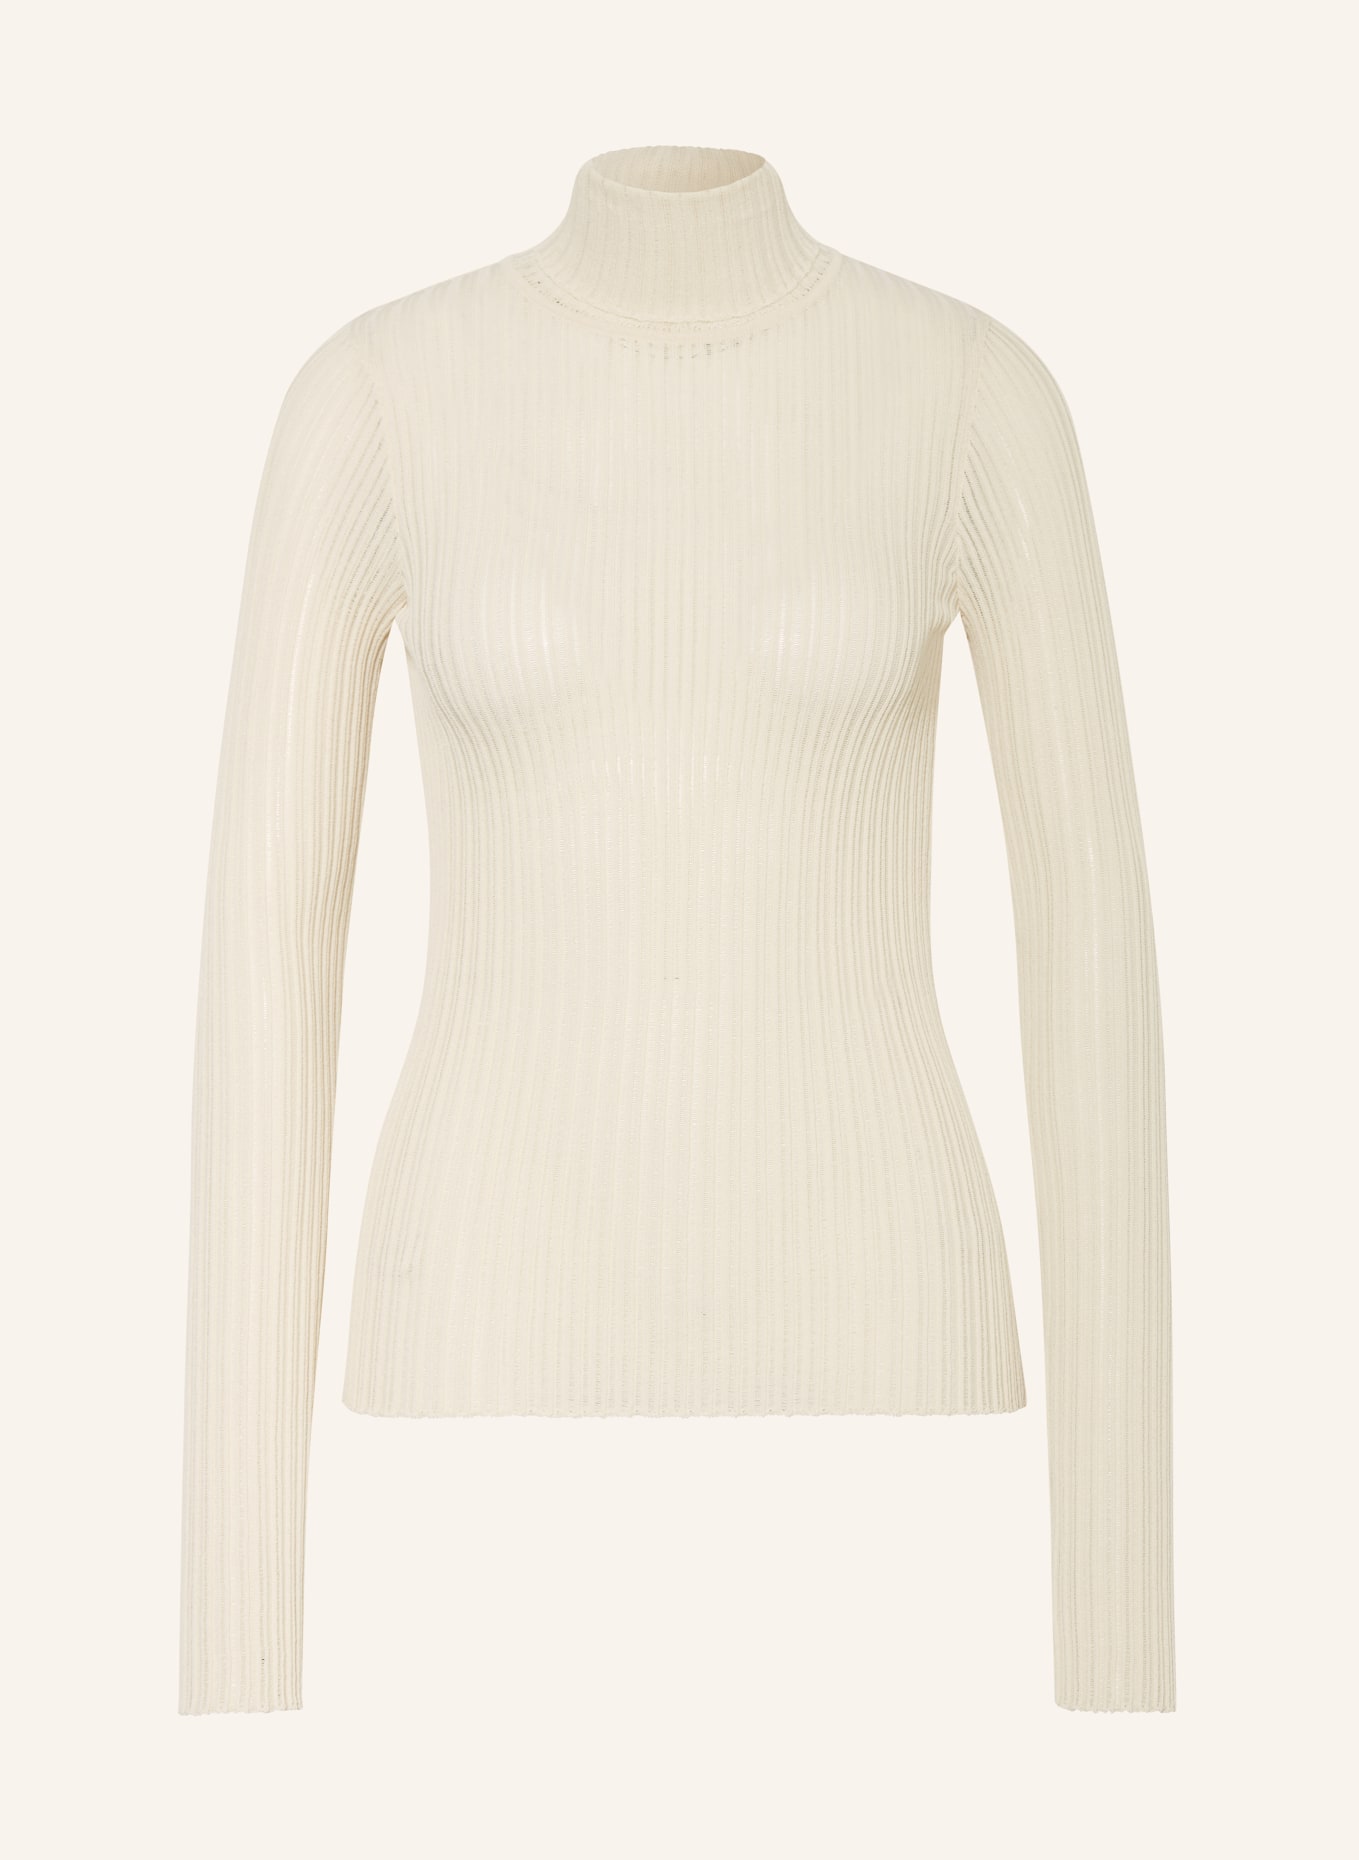 VANILIA Turtleneck sweater, Color: ECRU (Image 1)